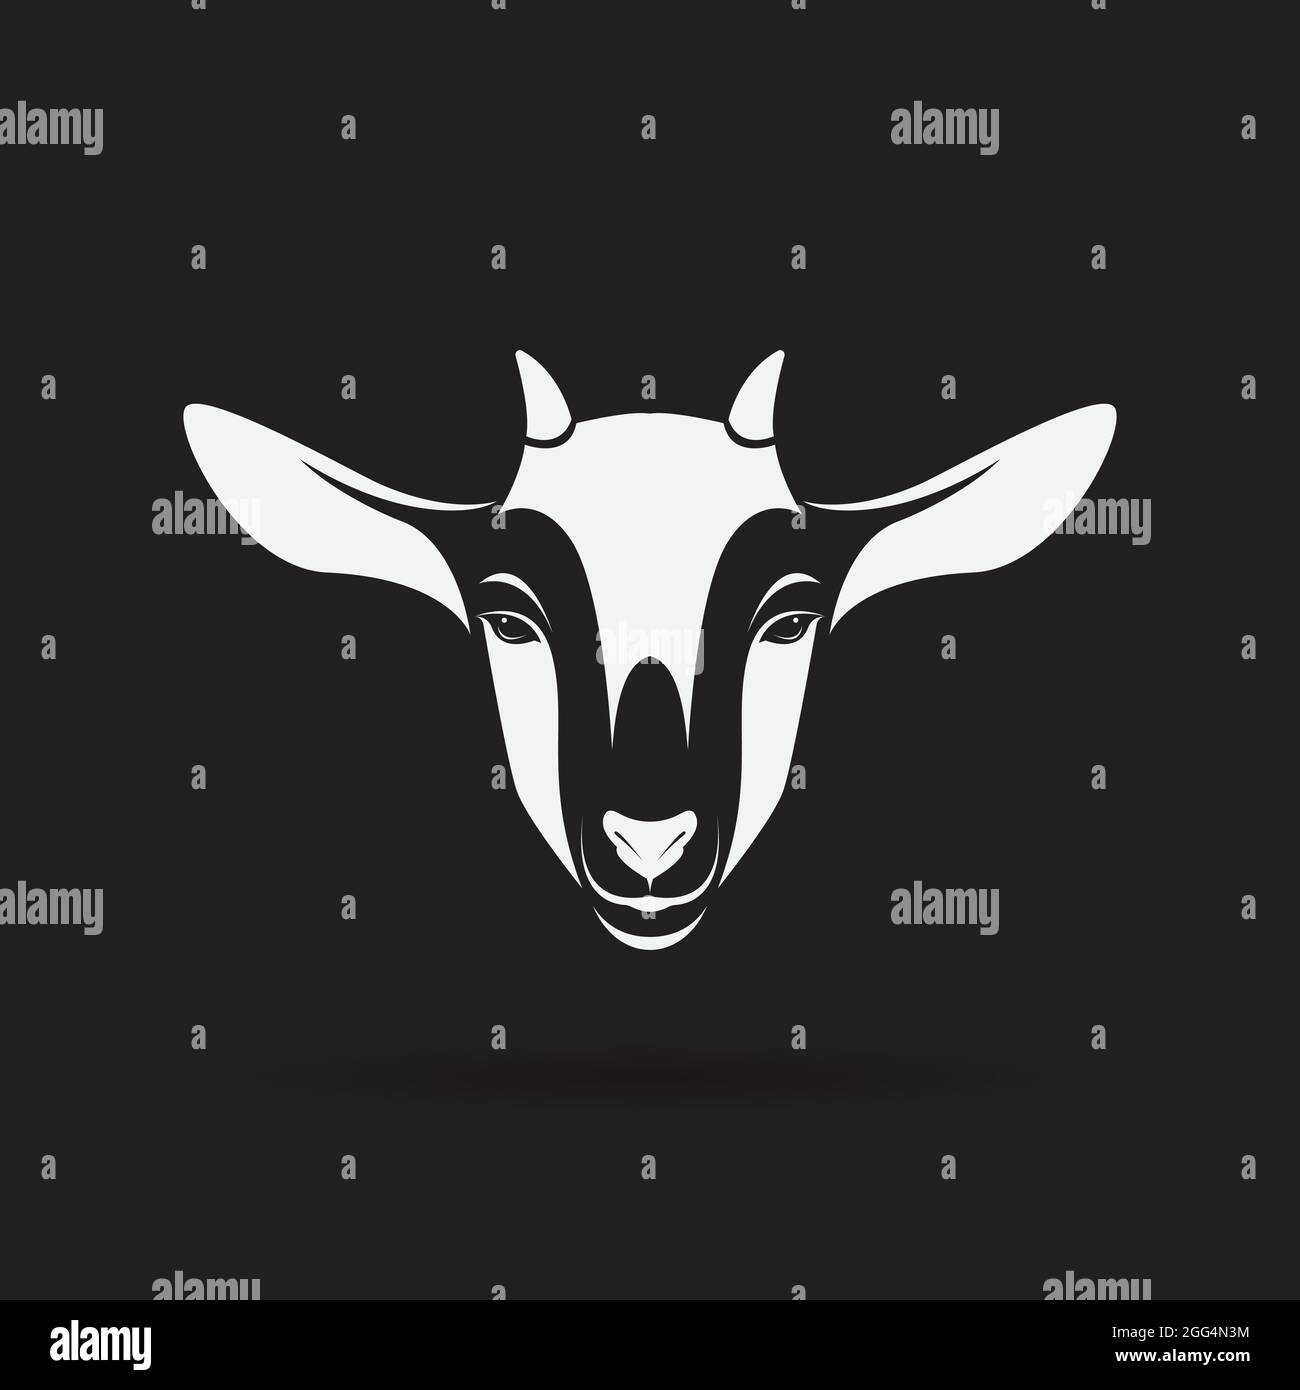 Vektor von Ziegenkopf-Design auf weißem Hintergrund, Animal Farm. Ziegenlogo oder -Symbol. Leicht editierbare Vektorgrafik mit Ebenen. Stock Vektor